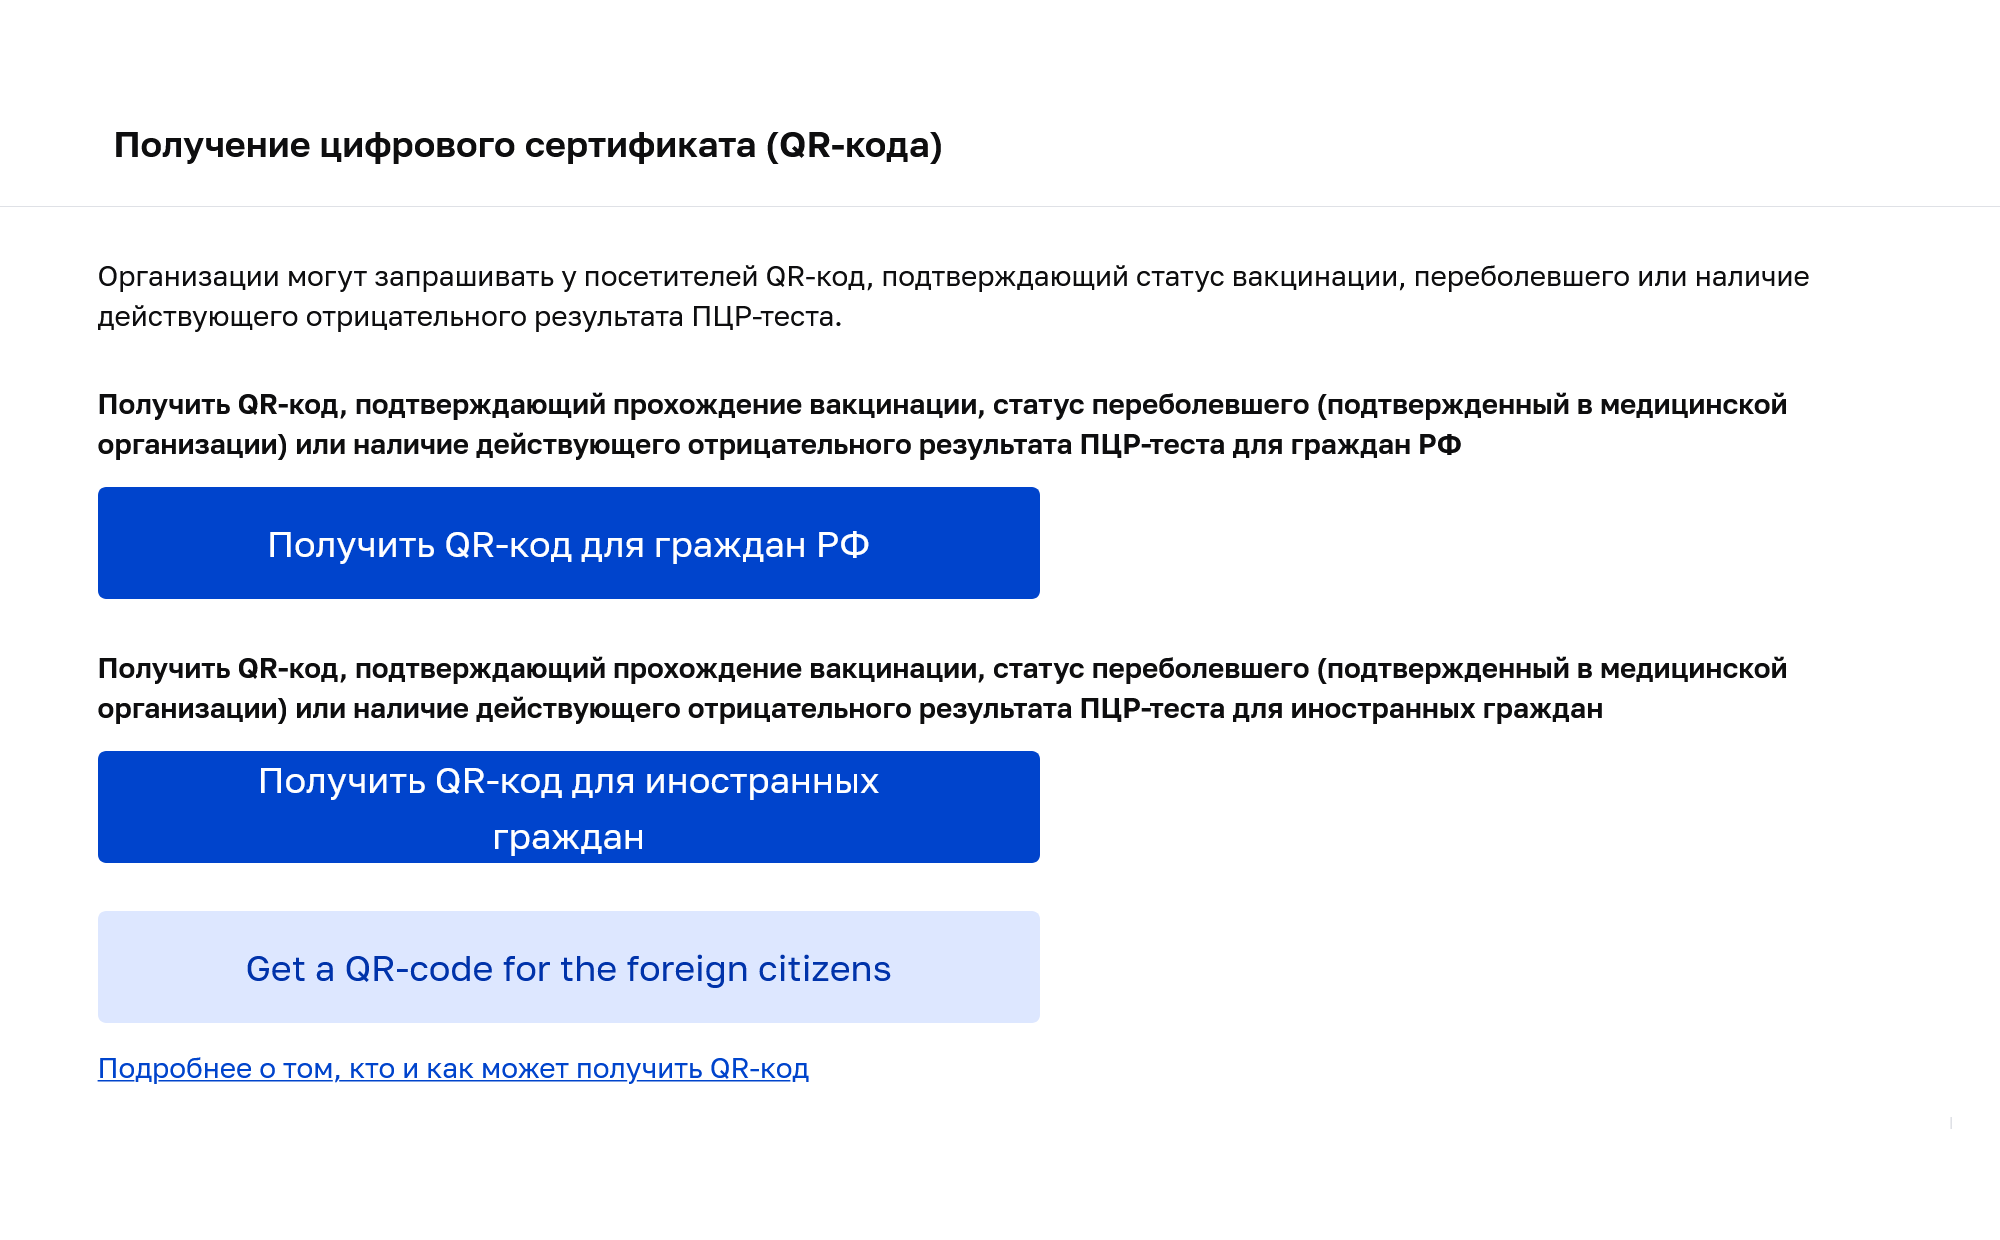 На сайте mos.ru/qr для иностранцев есть отдельная анкета — на русском и английском языках. Источник: mos.ru/qr